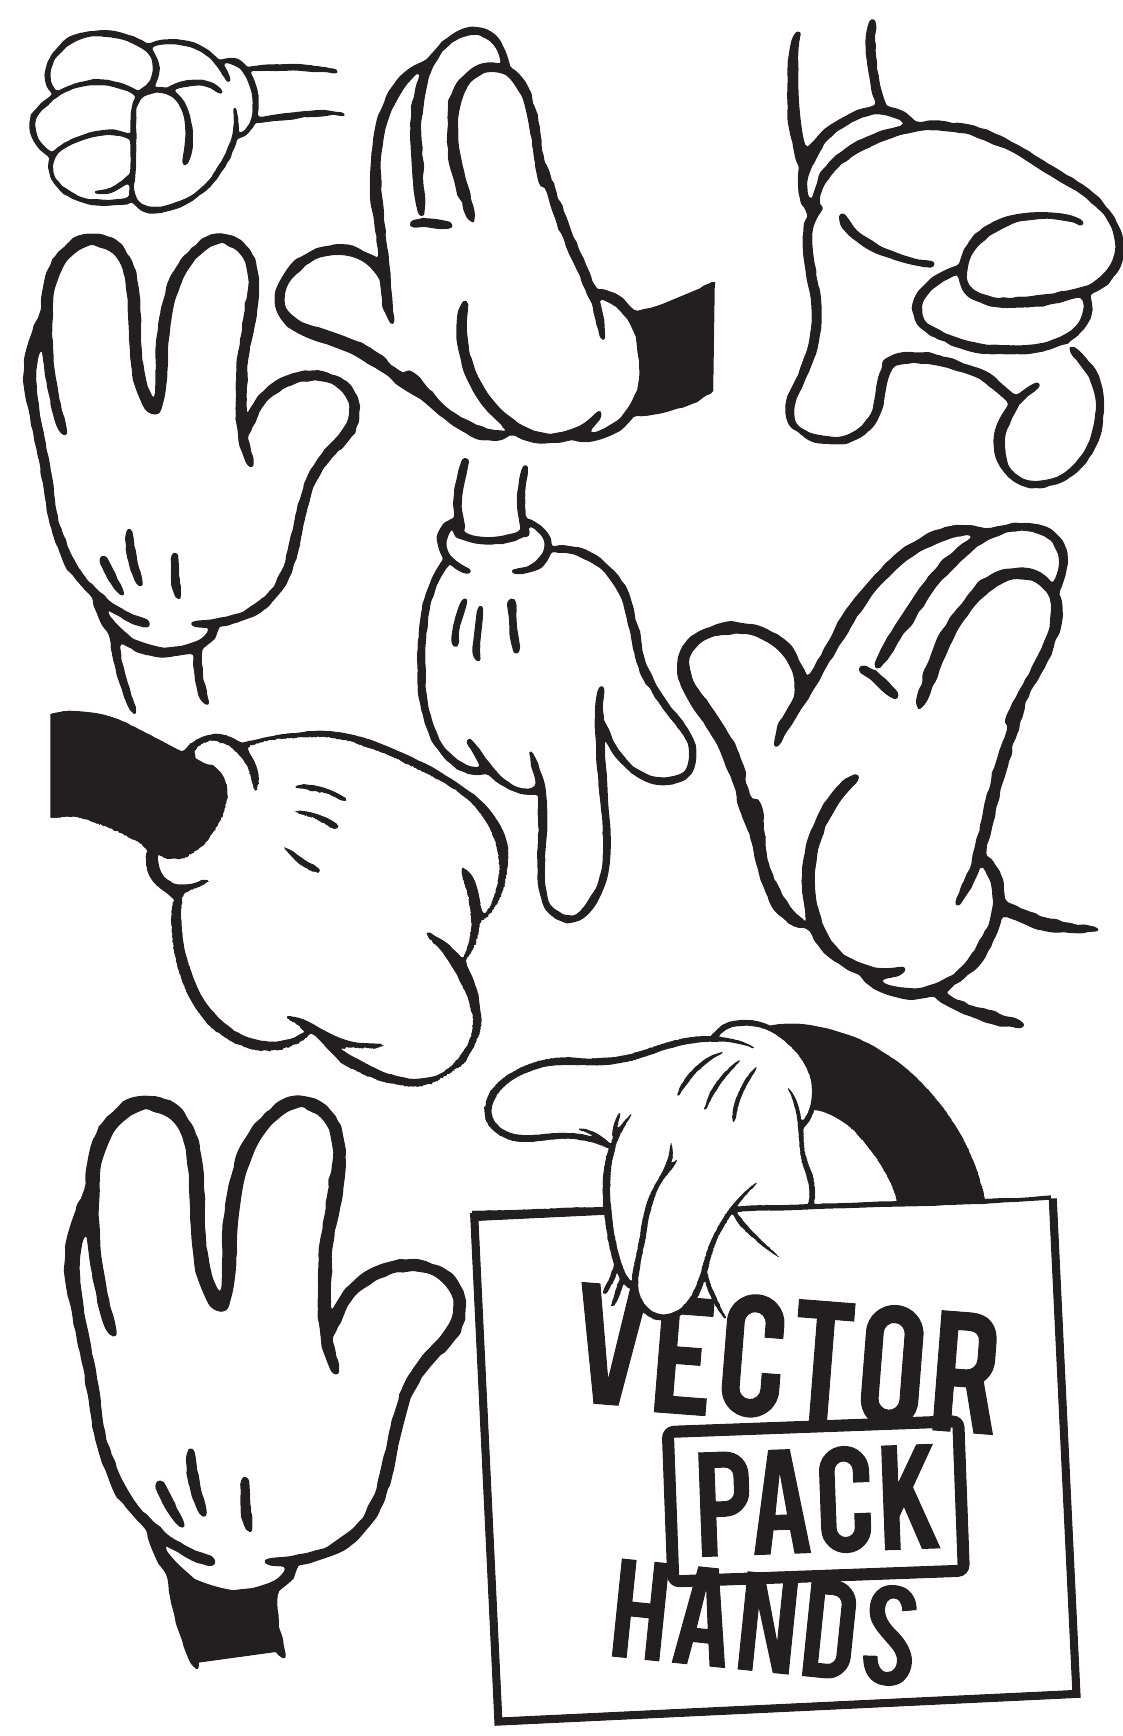 7 Vector Cartoon Hands Images